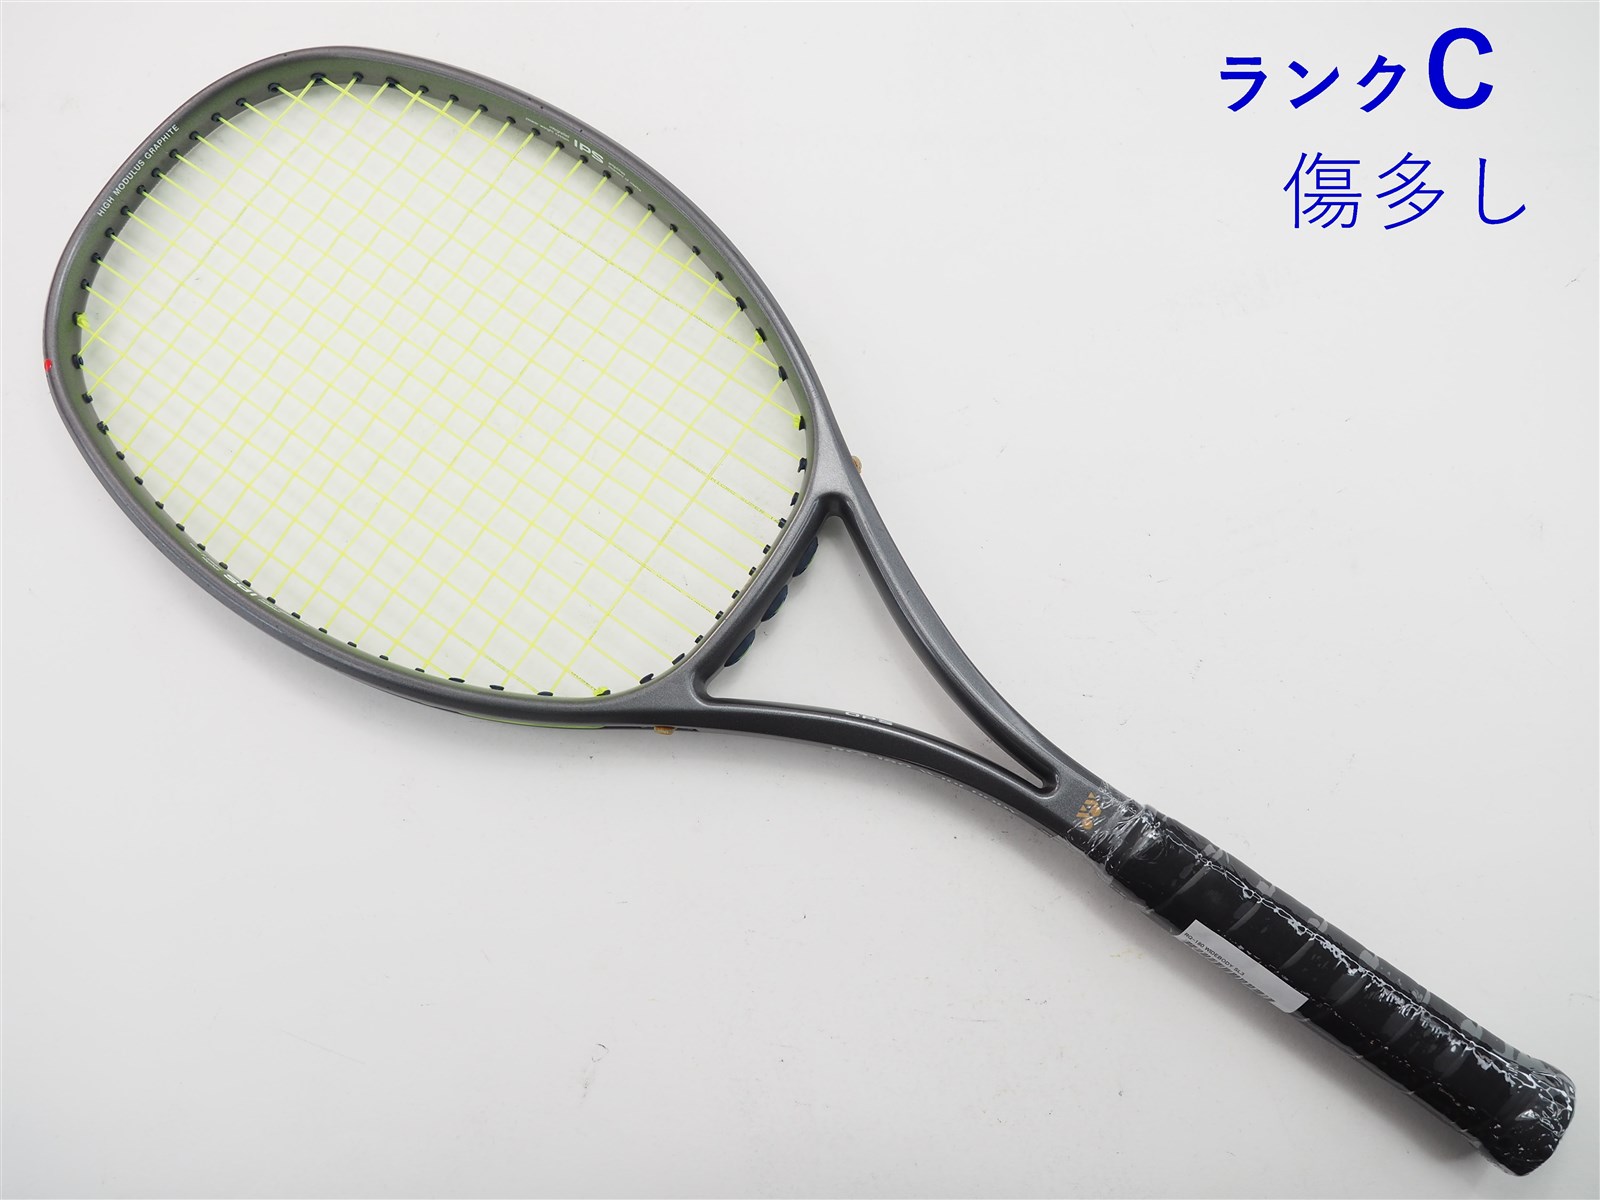 注目の ヨネックスのテニスラケット RQ-190